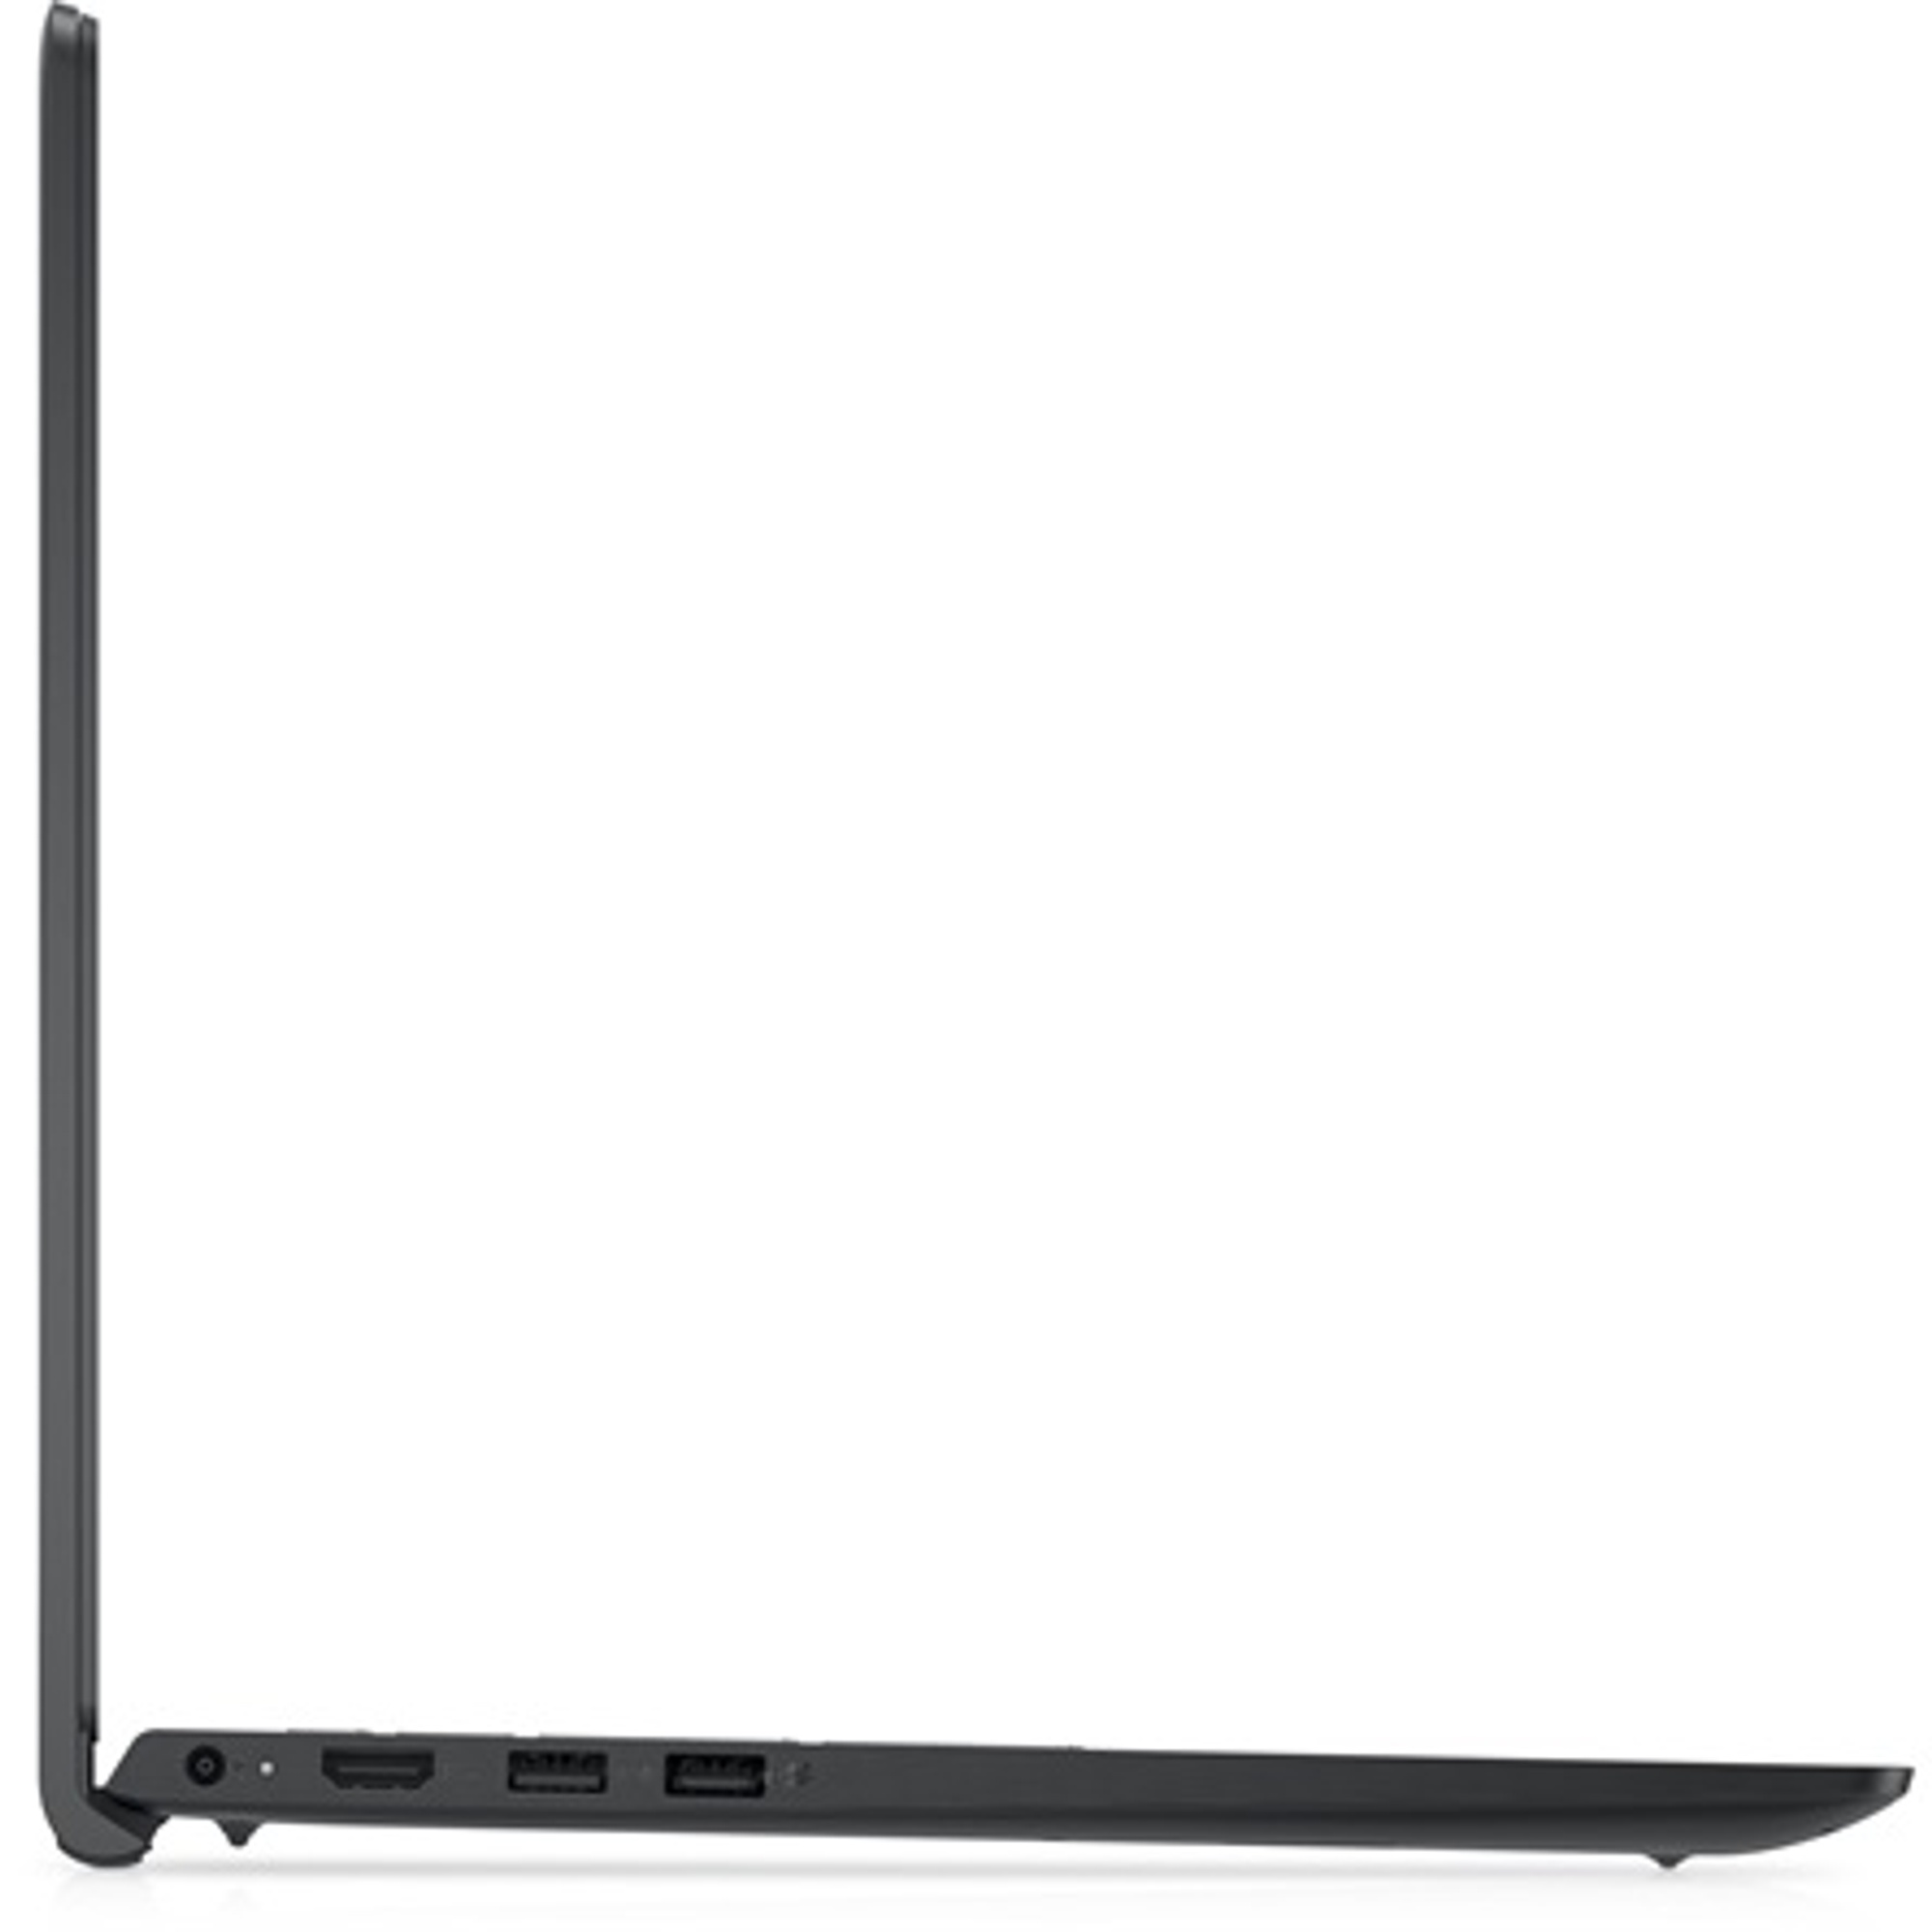 DELL V3520-13 Laptop / Notebook 3